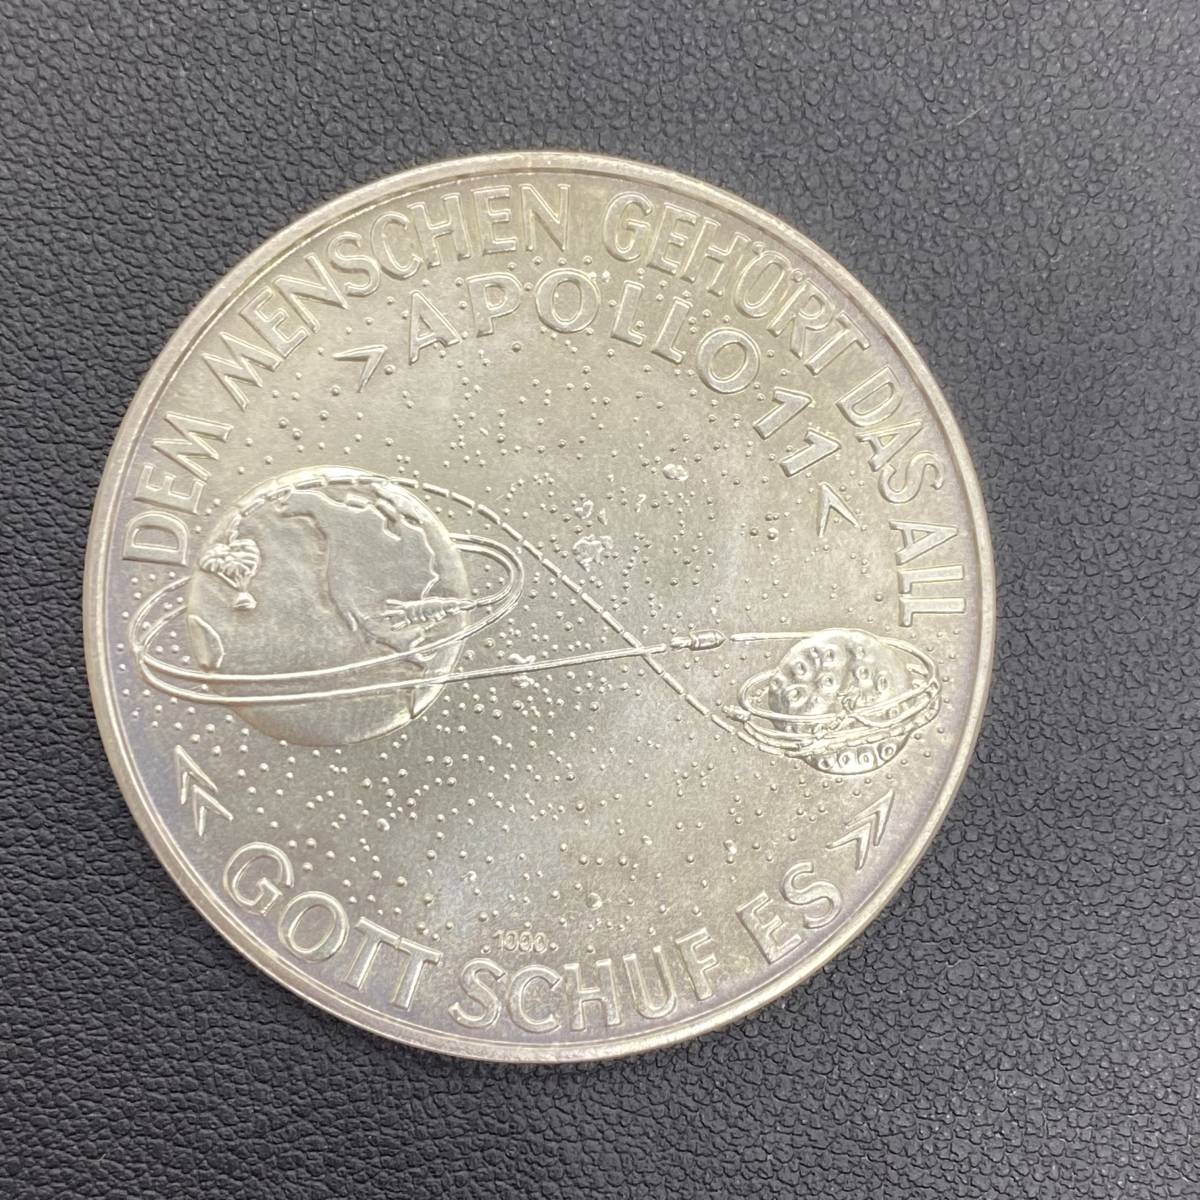 2922 アポロ11号 月面着陸記念メダル 1000シルバー製 DER ERSTE MENSCH 